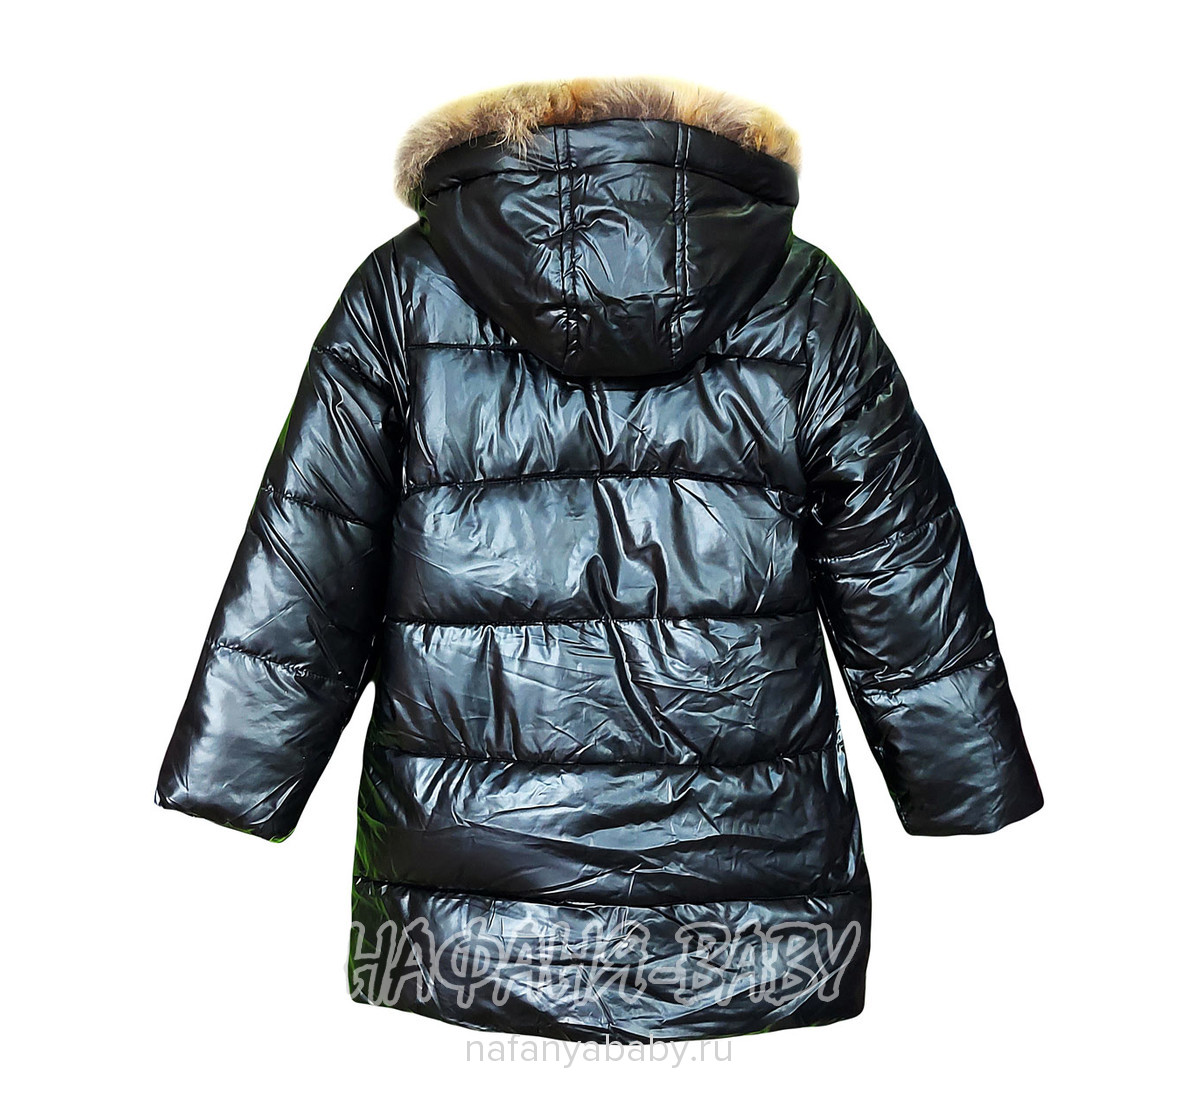 Зимняя удлиненная куртка  YIKAI, купить в интернет магазине Нафаня. арт: 625.